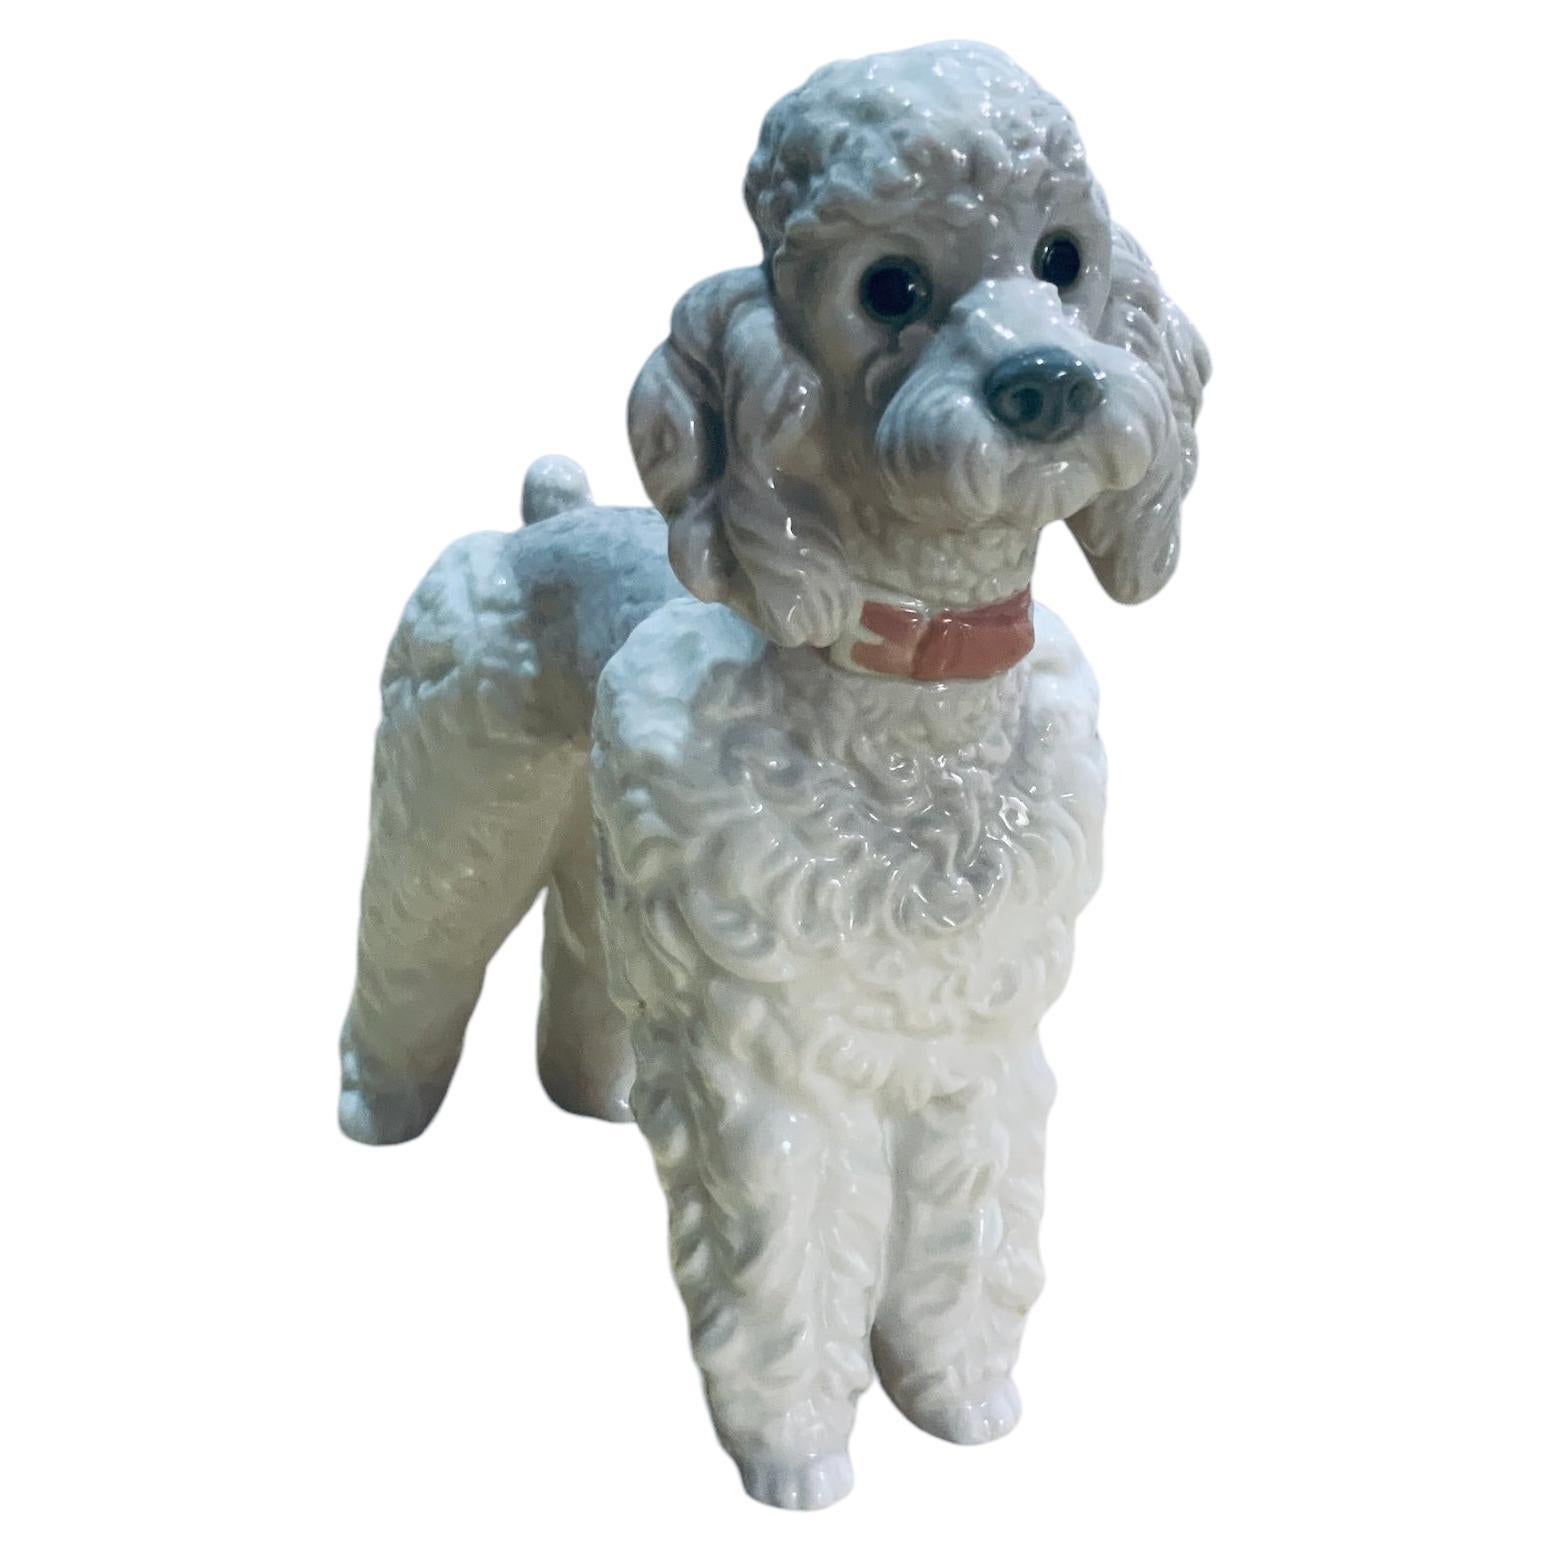 Lladro Porcelain Figurine of a Poodle Dog